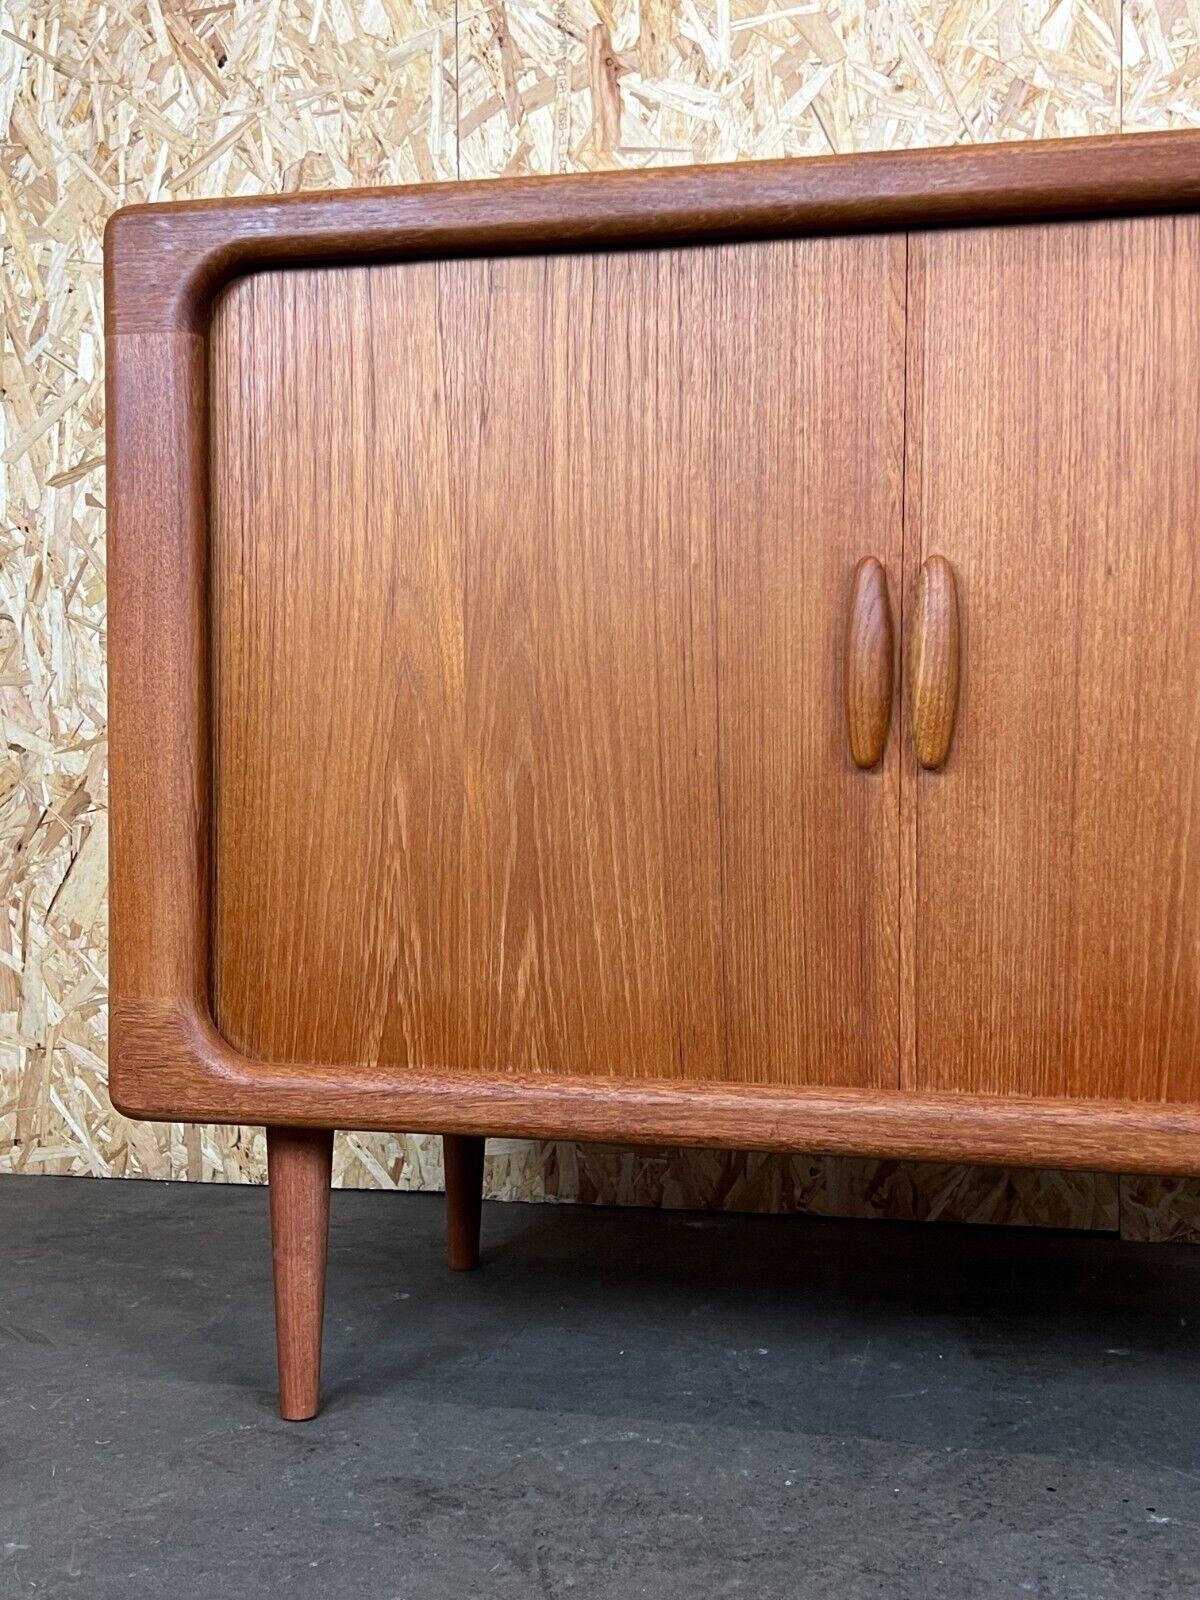 1960s-1970s Teak Dyrlund Sideboard Credenza Cabinet Danish Modern Design 1